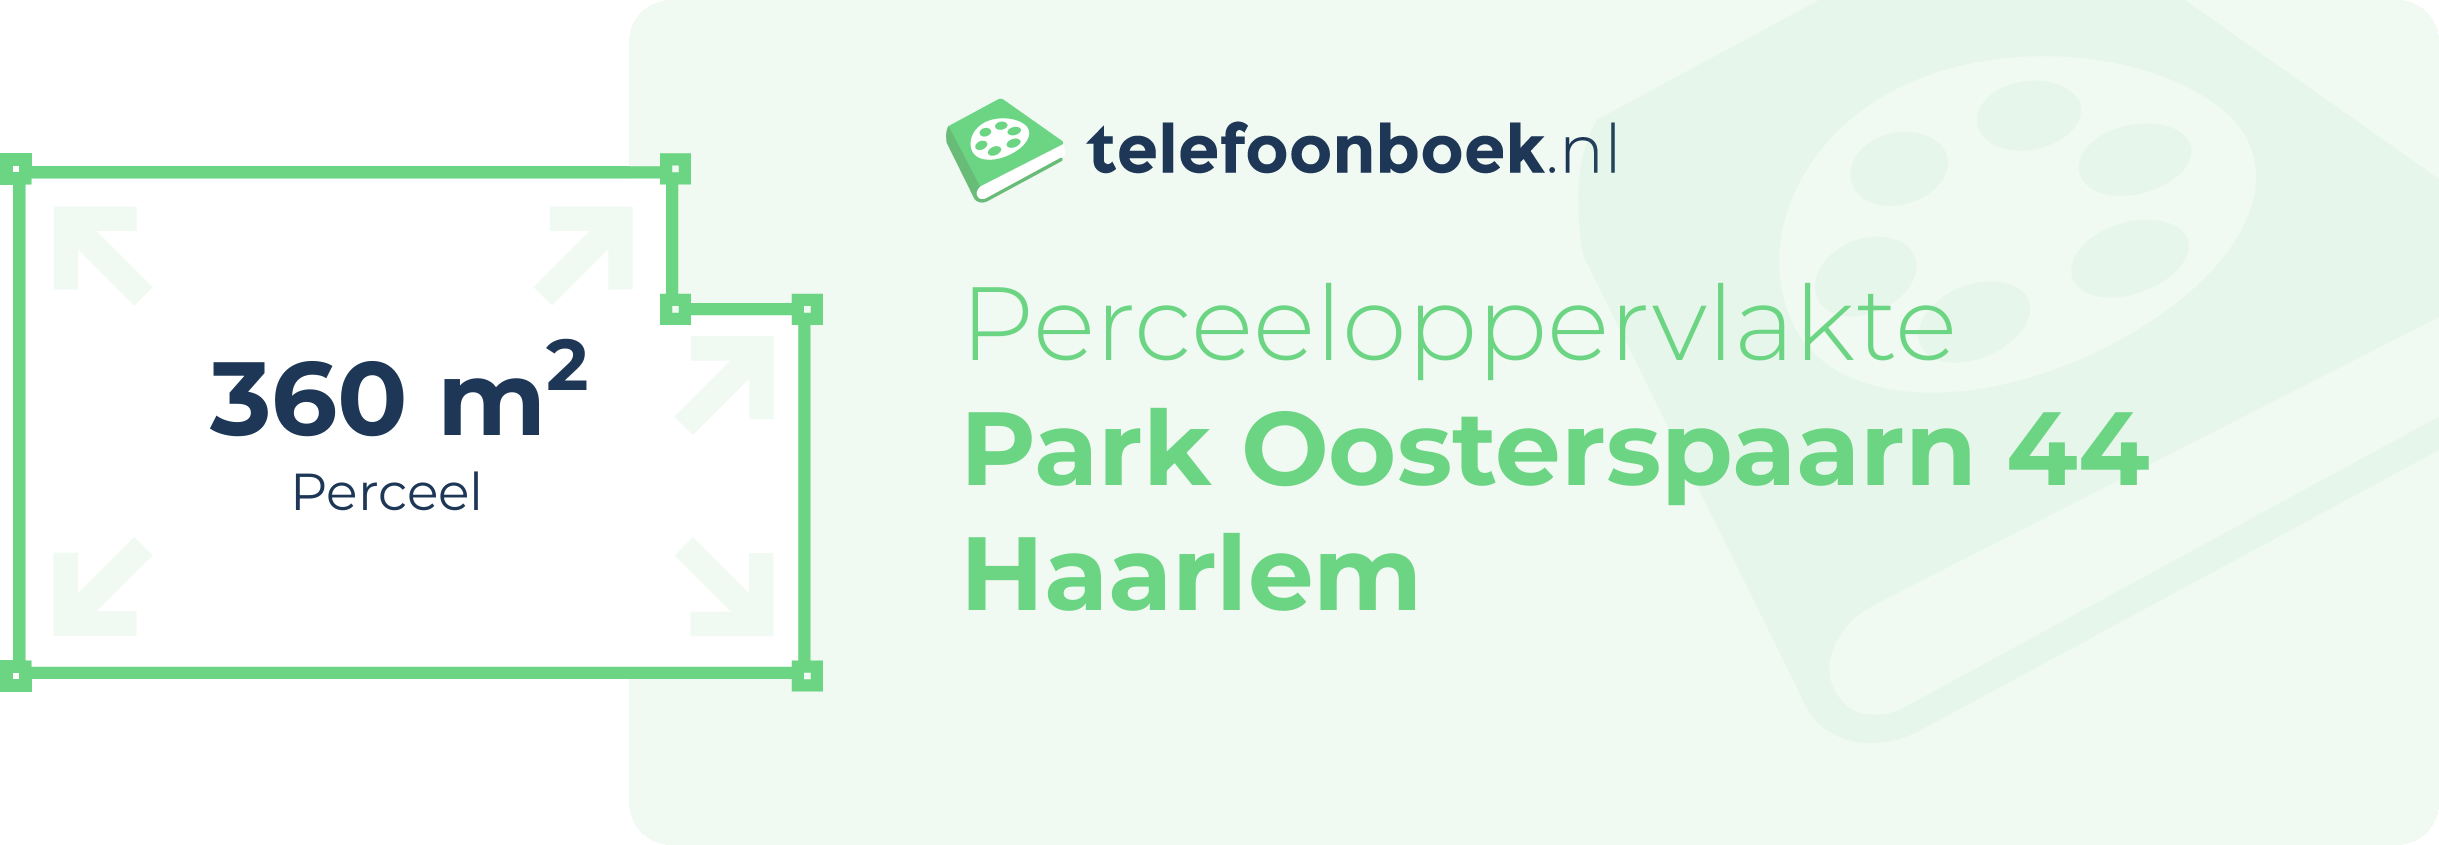 Perceeloppervlakte Park Oosterspaarn 44 Haarlem